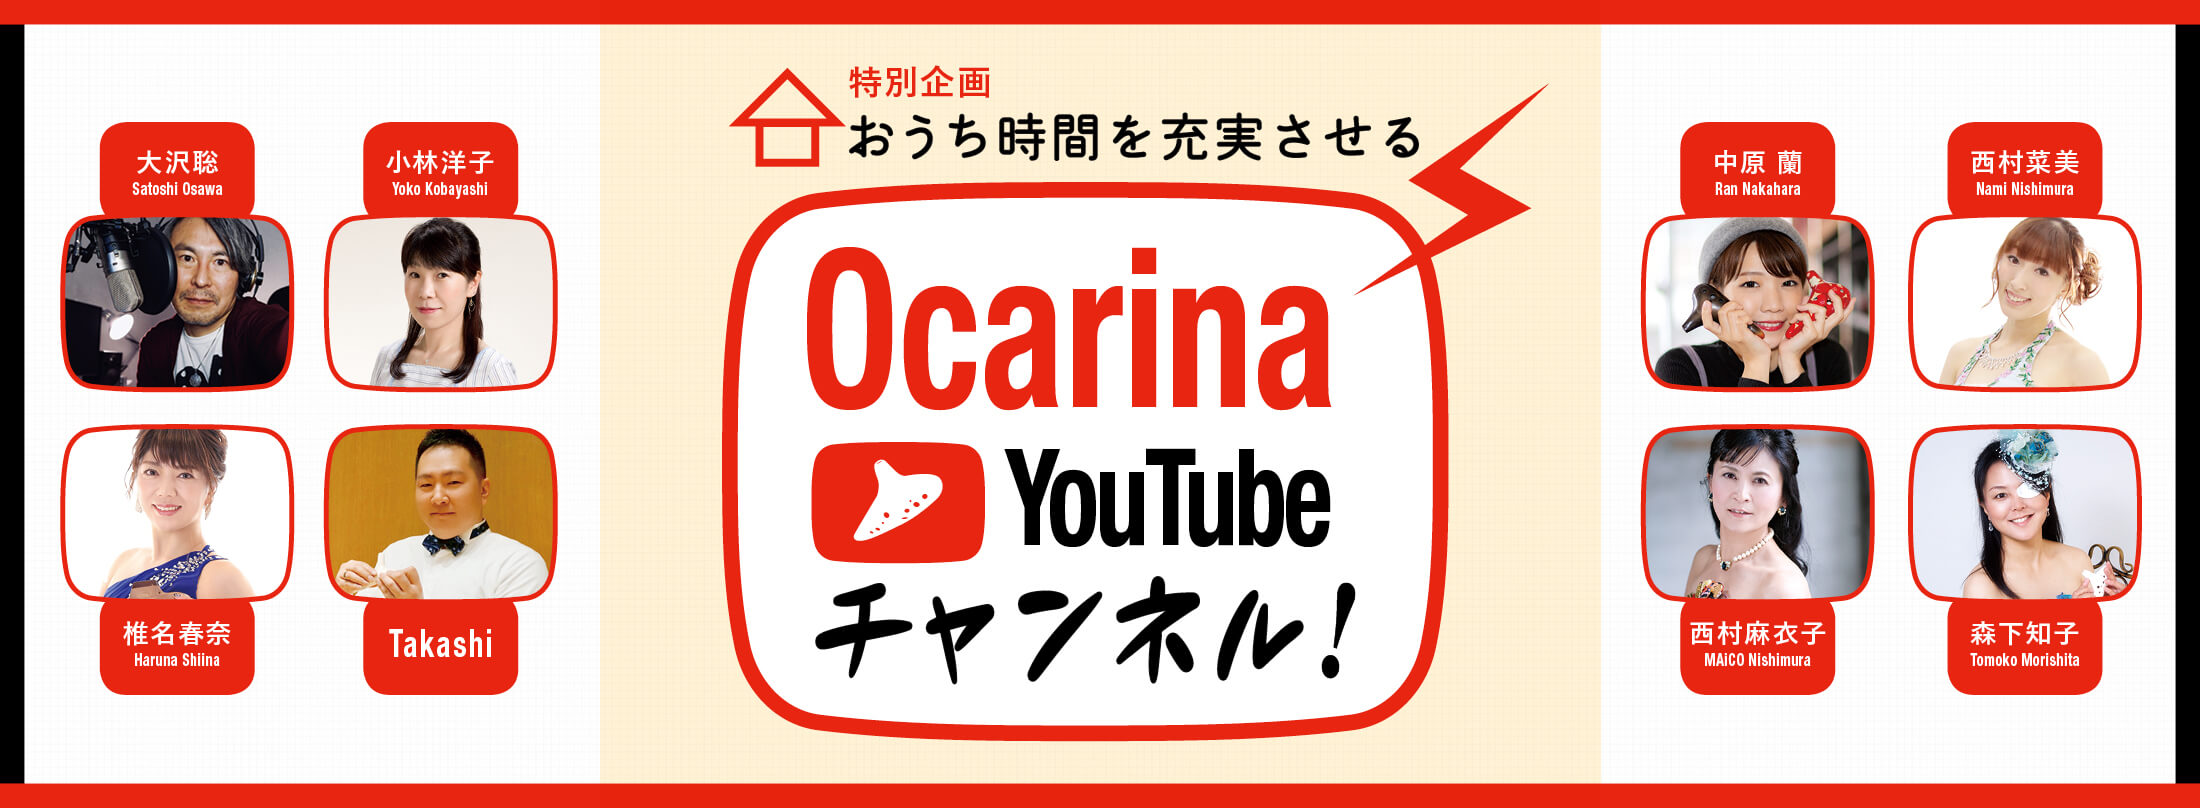 Ocarina36